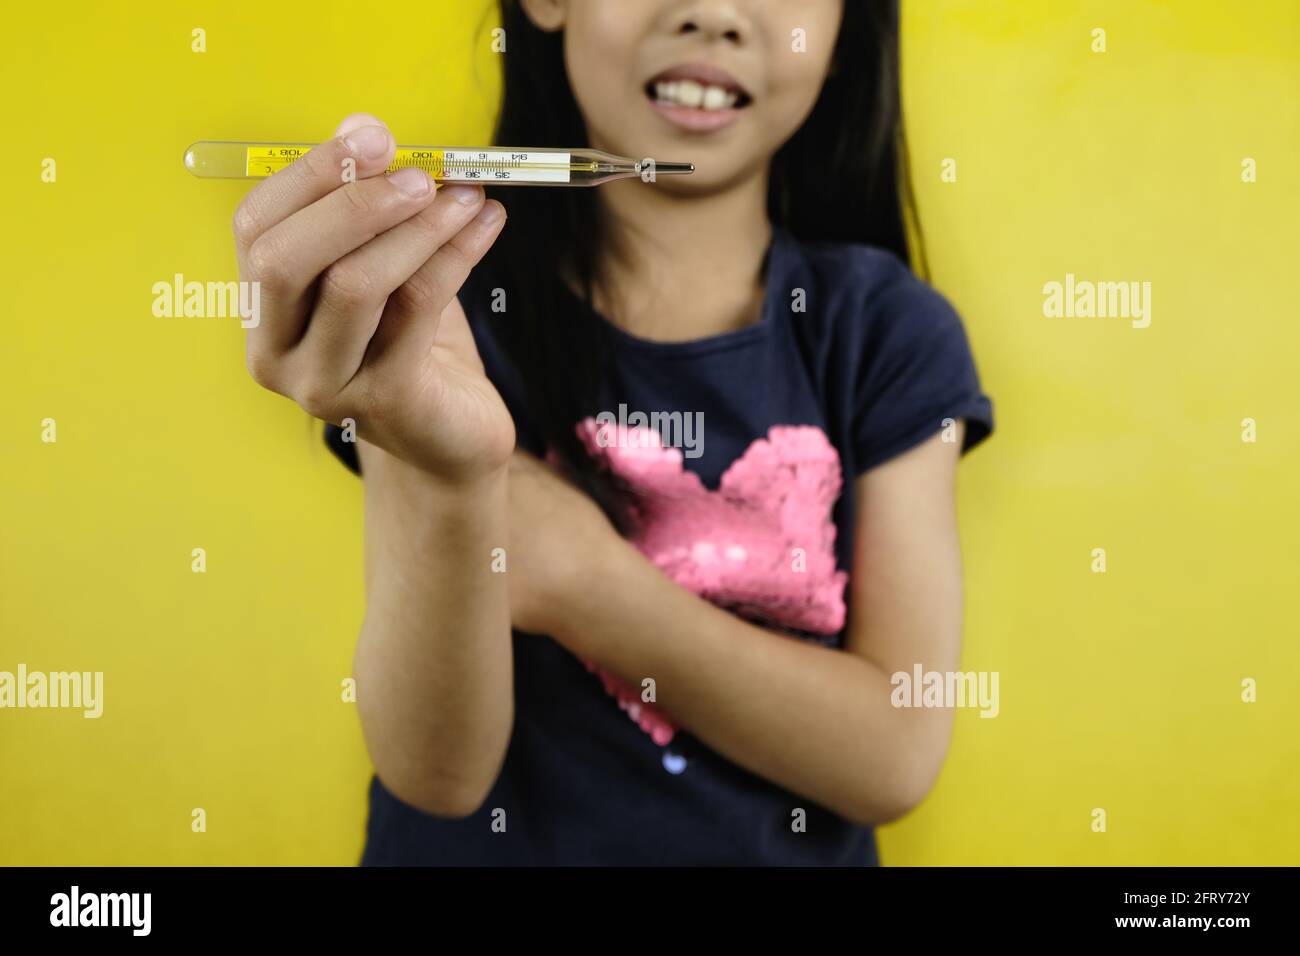 Ein junges asiatisches Mädchen hält in einer Hand ein Quecksilberthermometer mit Glasröhrchen hoch und zeigt die Temperatur an. Hellgelber Hintergrund. Stockfoto